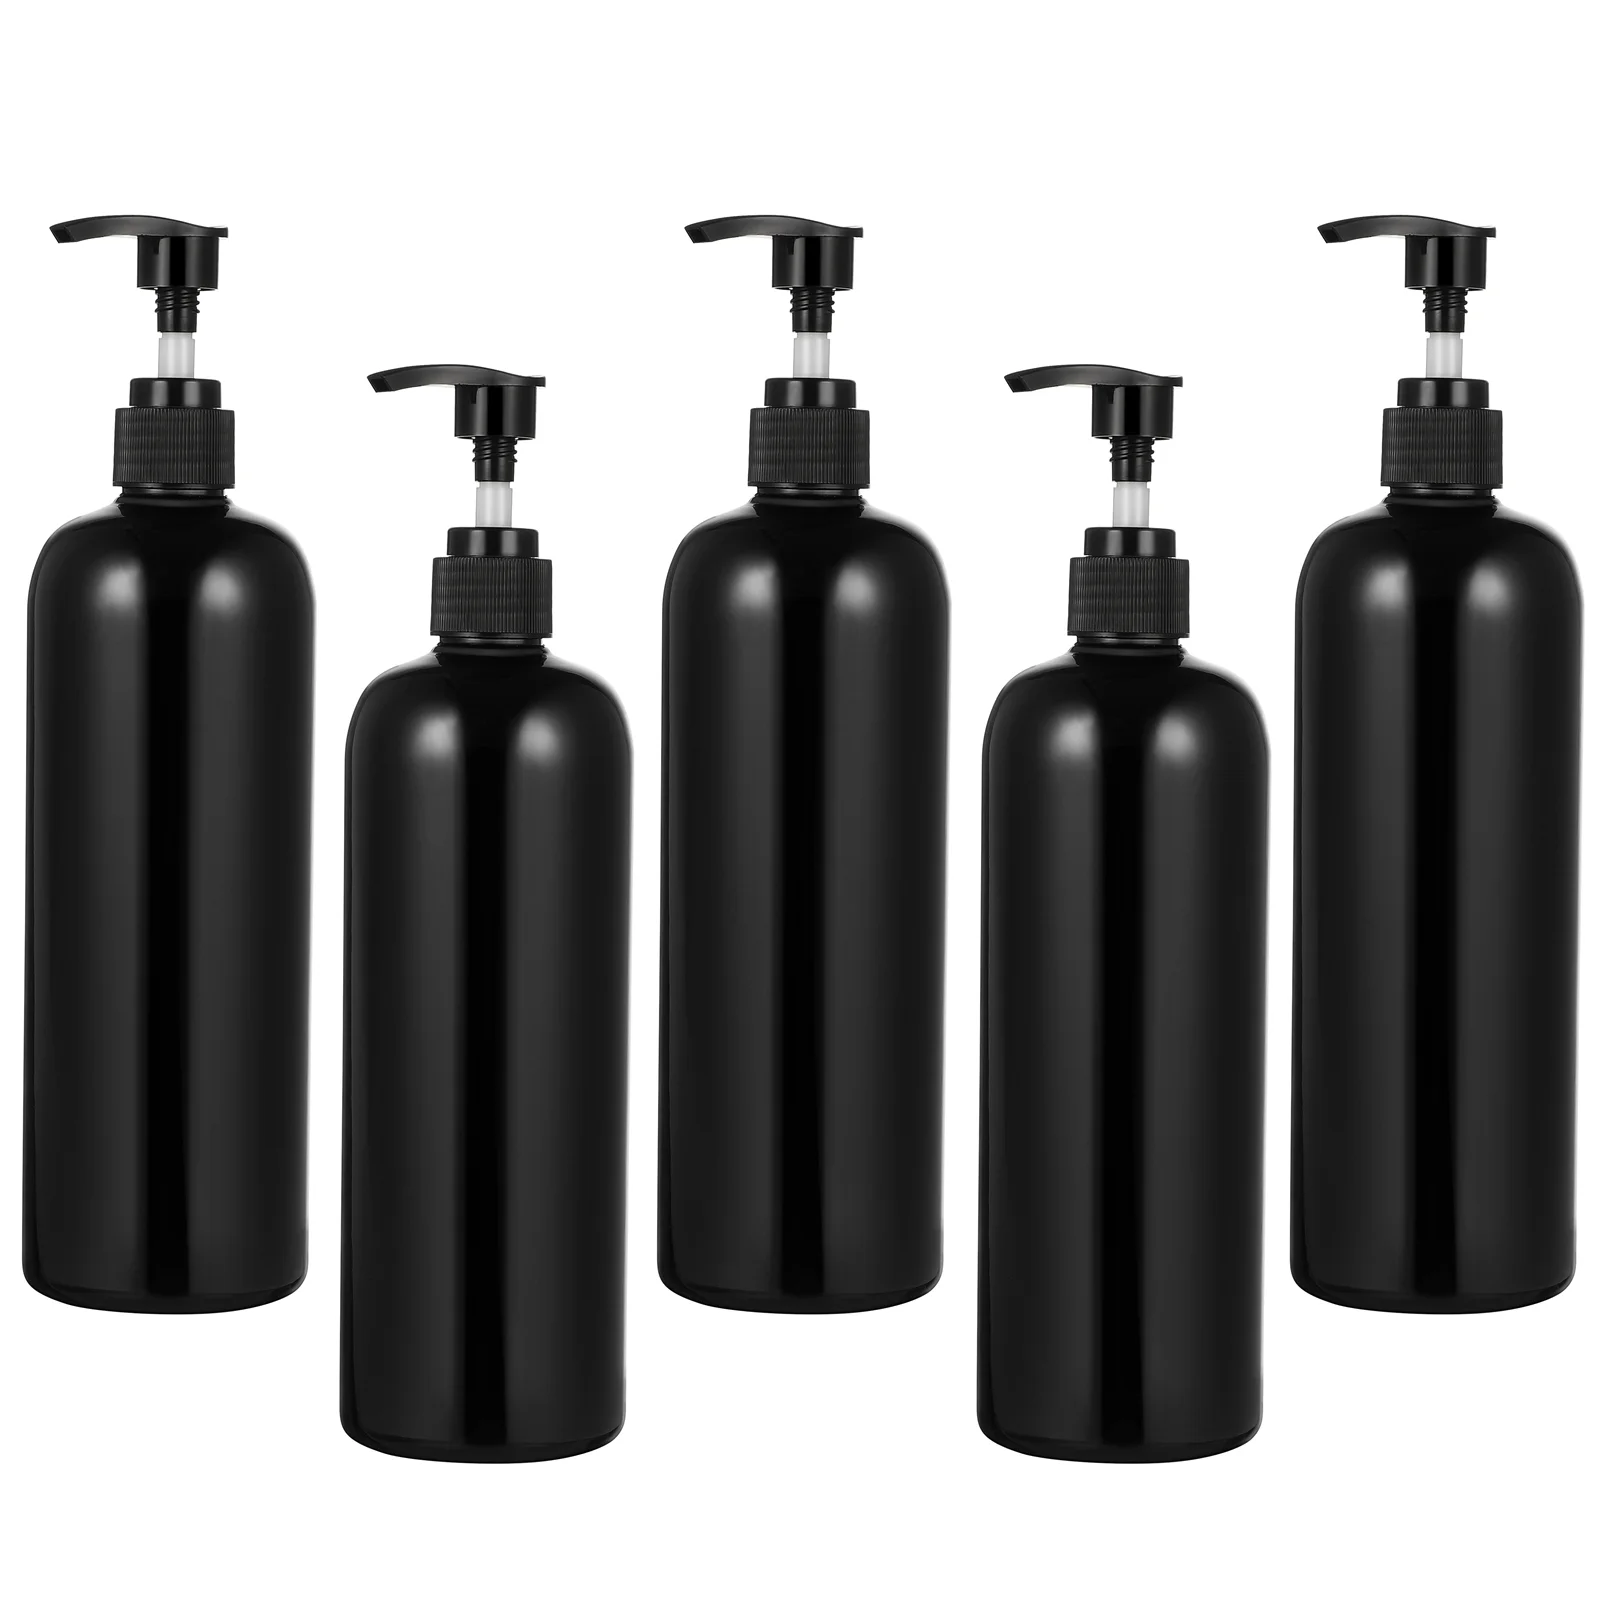 Travel Pump Bottle Travel Shampoo Travel Lotion Container Empty Press Pump Bottles Pump Bottle Dispenser Black Pump Bottle